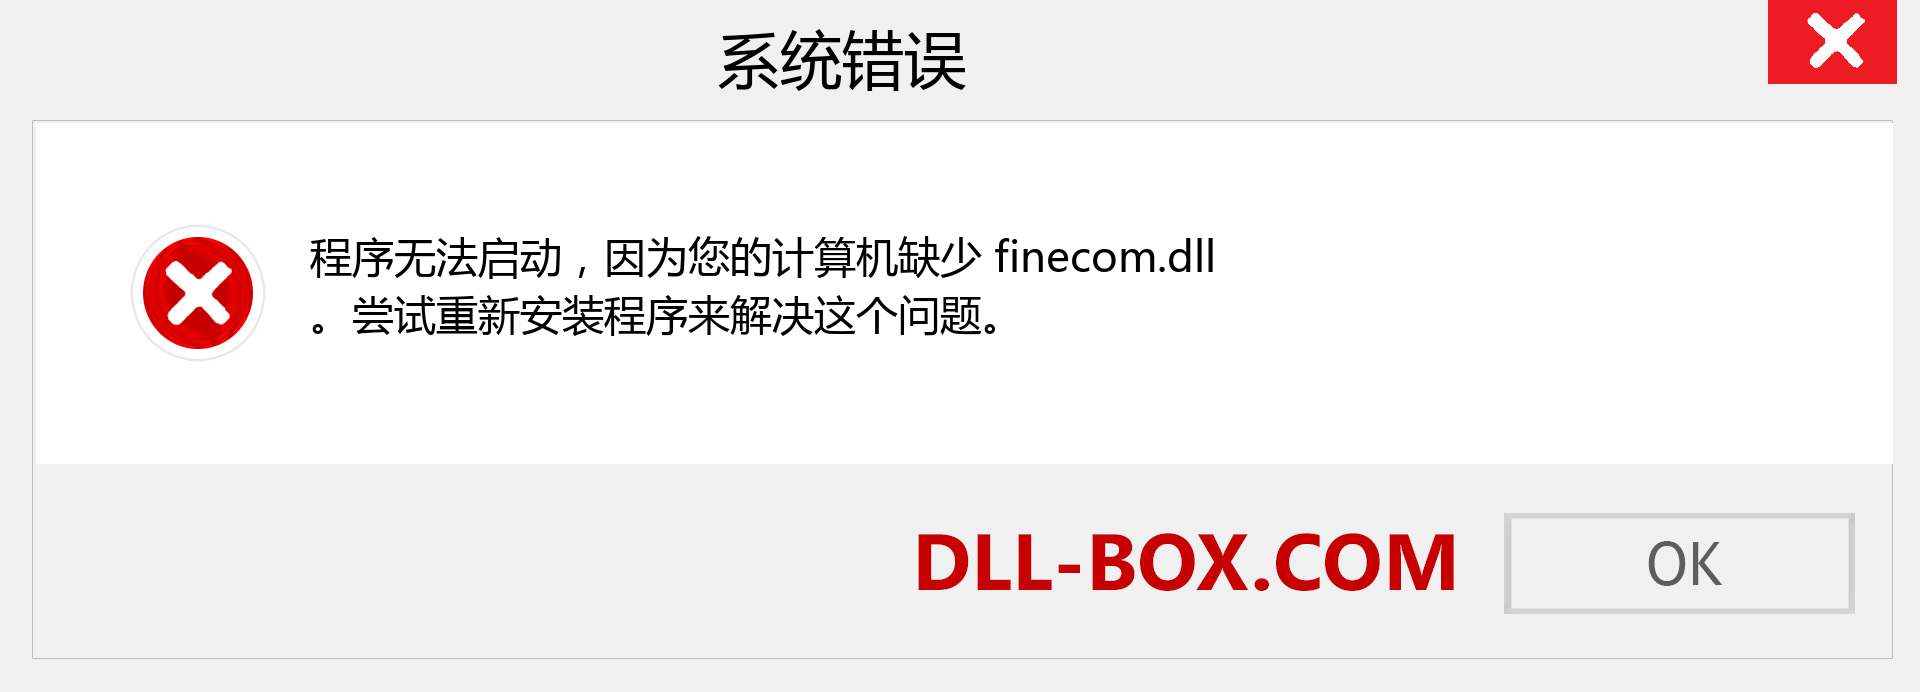 finecom.dll 文件丢失？。 适用于 Windows 7、8、10 的下载 - 修复 Windows、照片、图像上的 finecom dll 丢失错误